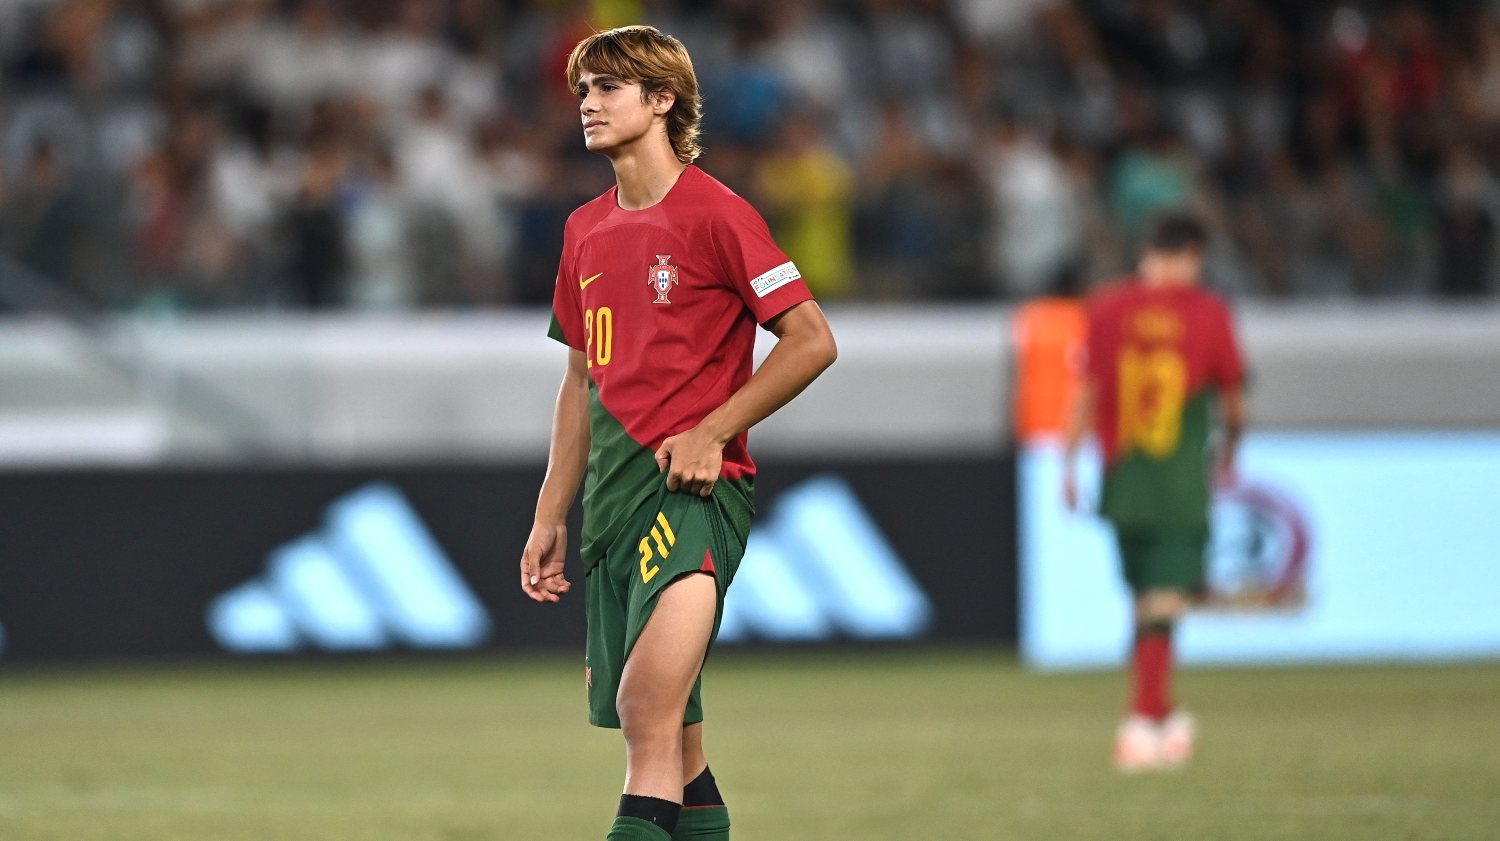 Rodrigo Mora só não marcou nem assistiu na final do Europeu Sub-17, com Portugal a perder com a Itália após um início desastroso de jogo